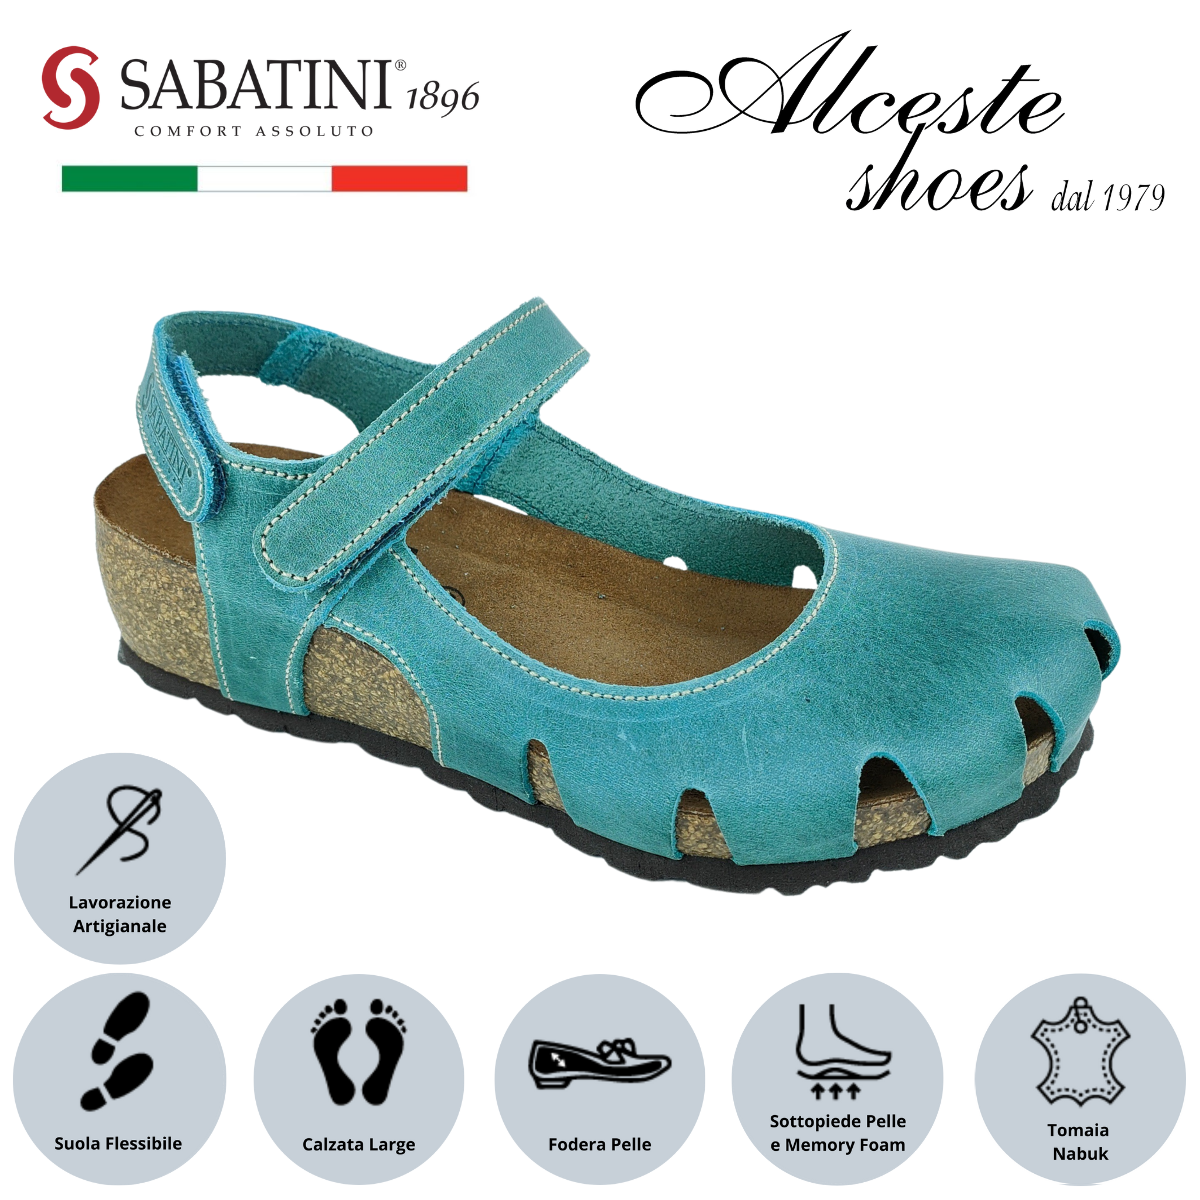 Sandalo Donna con Punta Chiusa "Sabatini" Art. 4009 in Nabuk Jeans Alceste Shoes 28